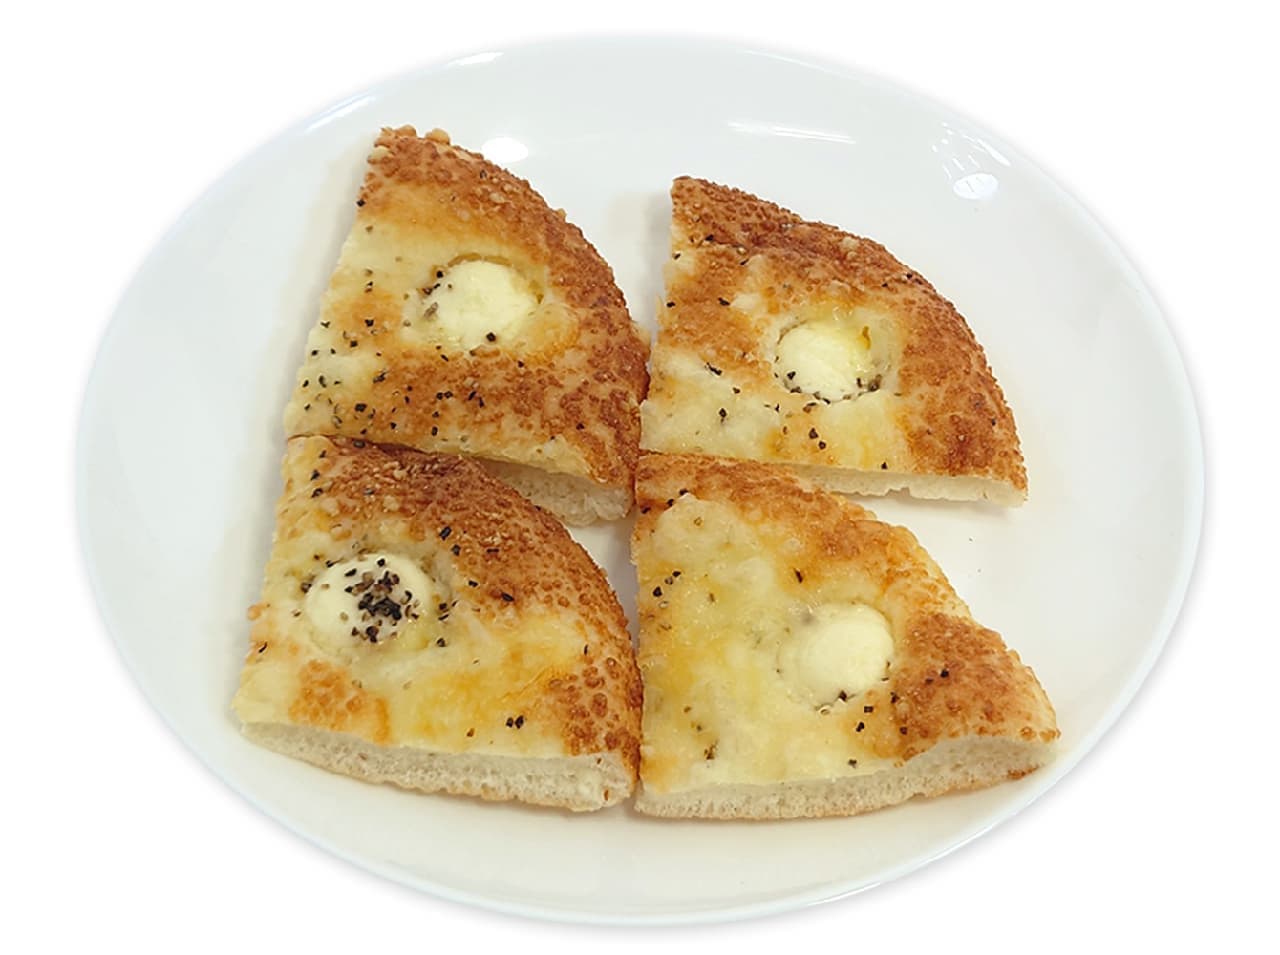 7プレミアム 3種のチーズパン4切入